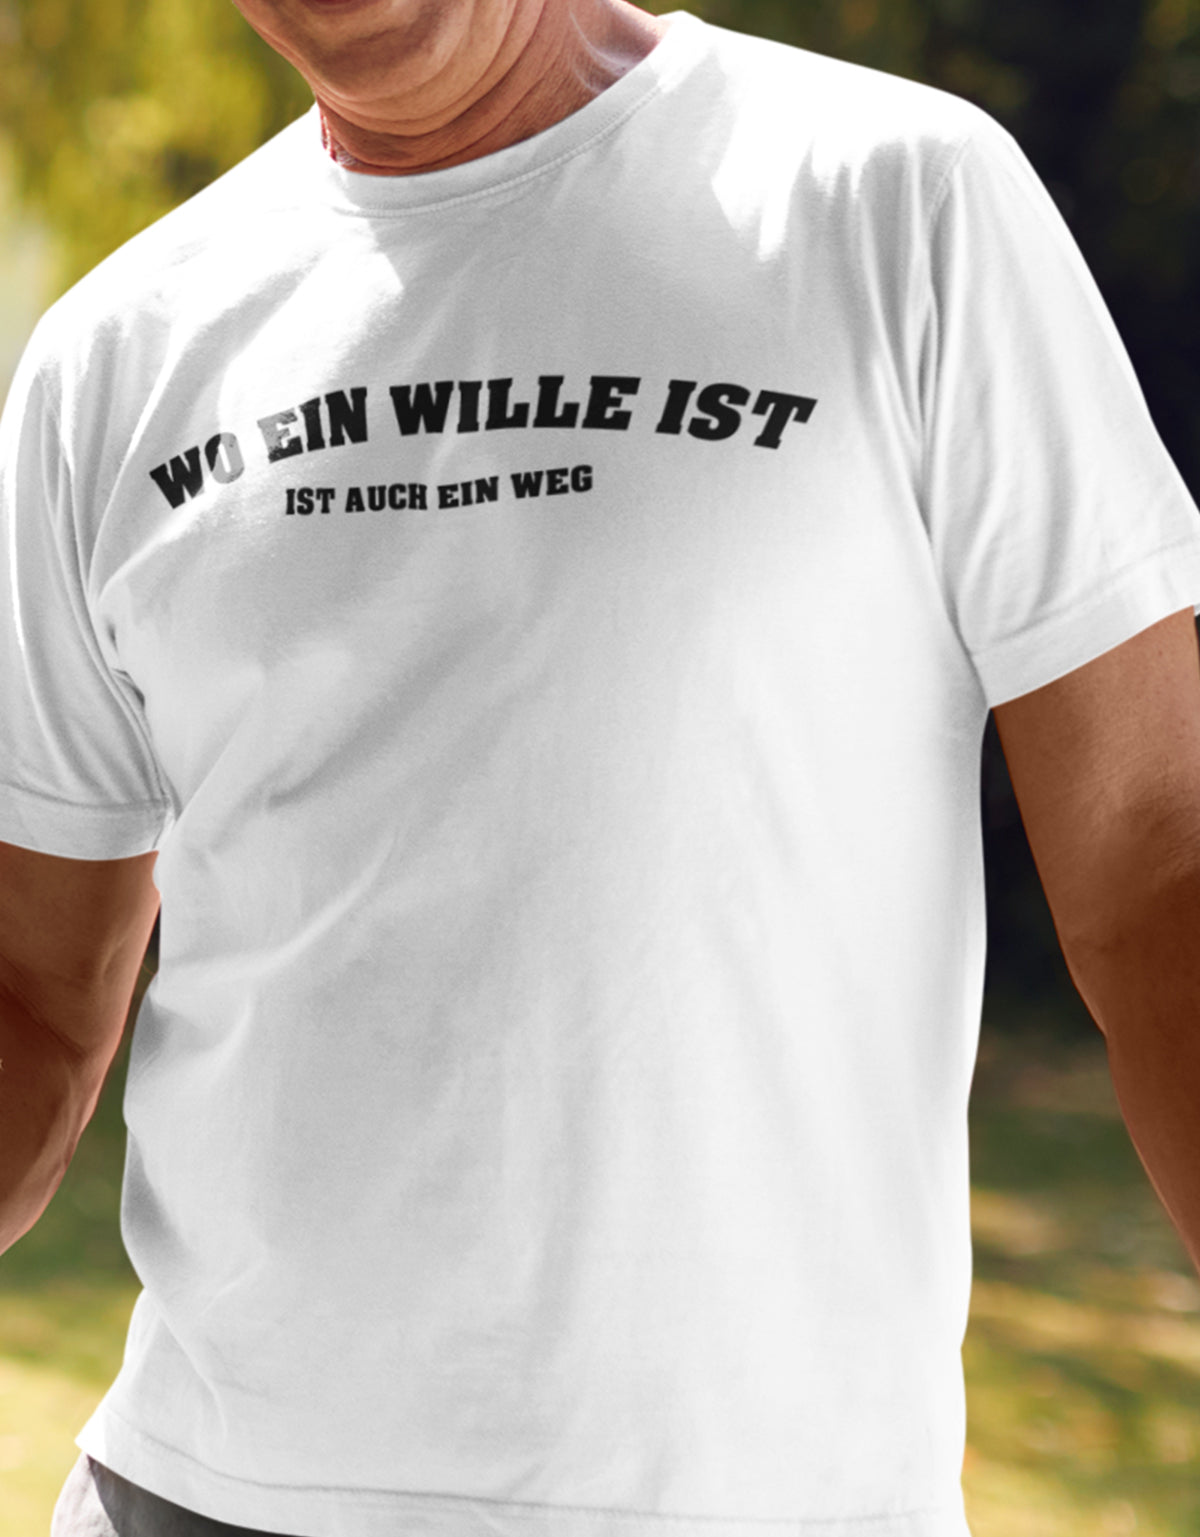 Männer Tshirt mit Wunschtext.  Abgerundeter Text im Collage-Style. 